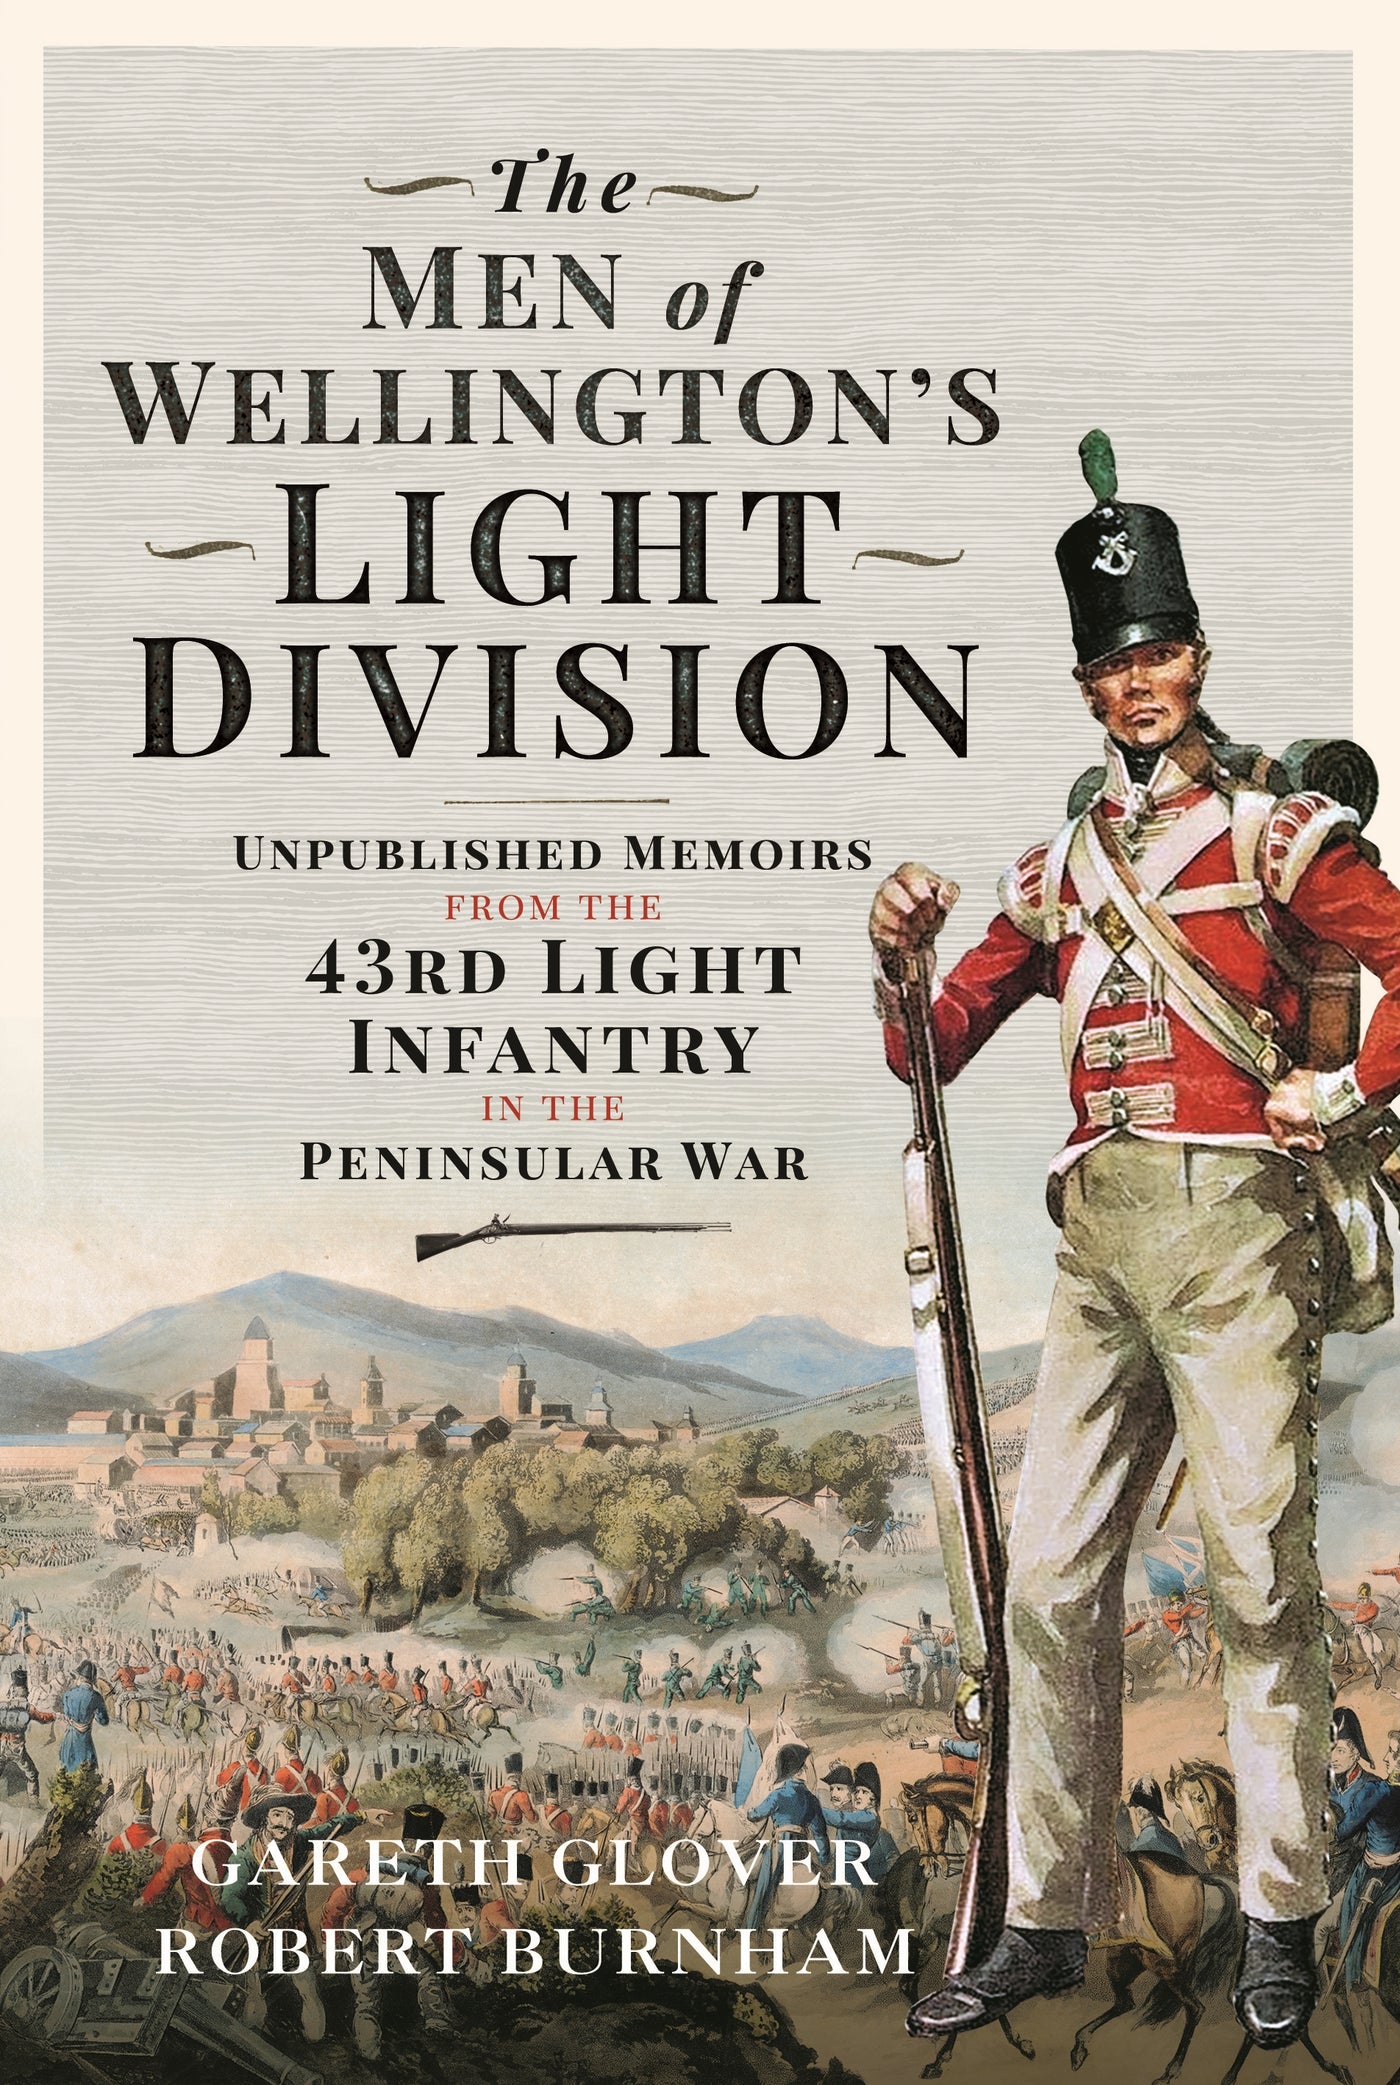 Die leichte Division der Männer von Wellington 